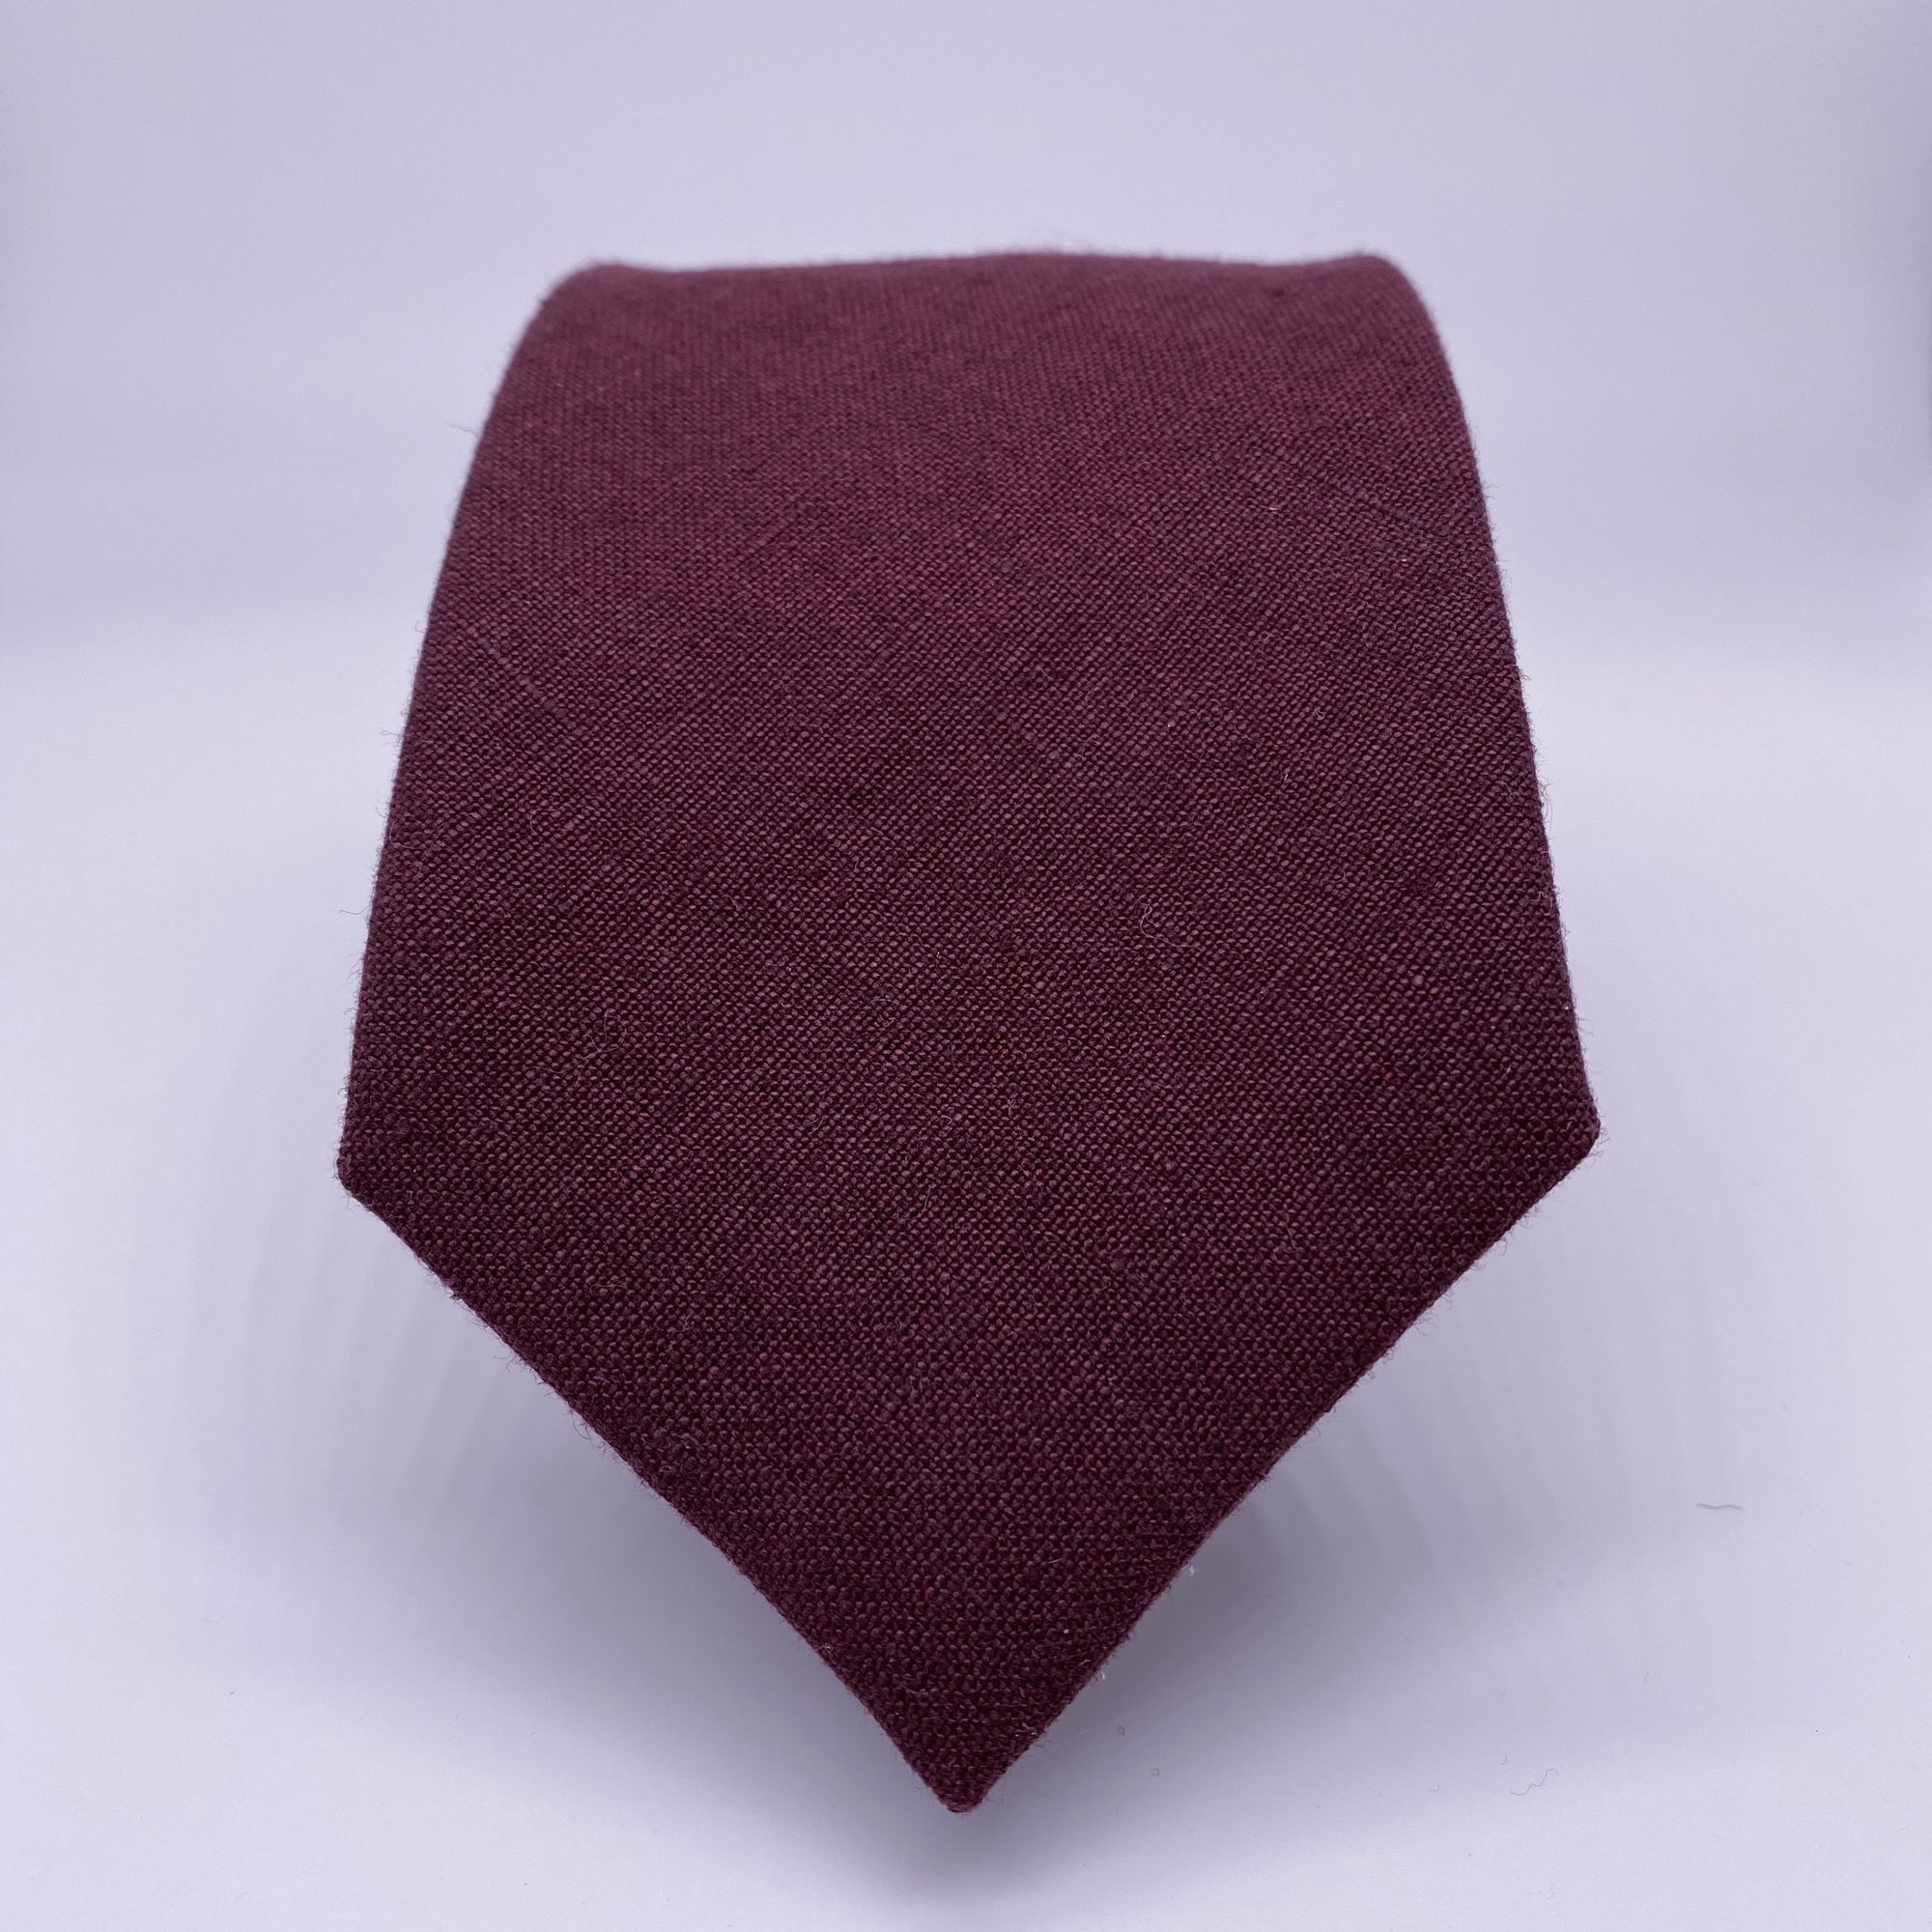 Burgundy Tie in Irish Linen